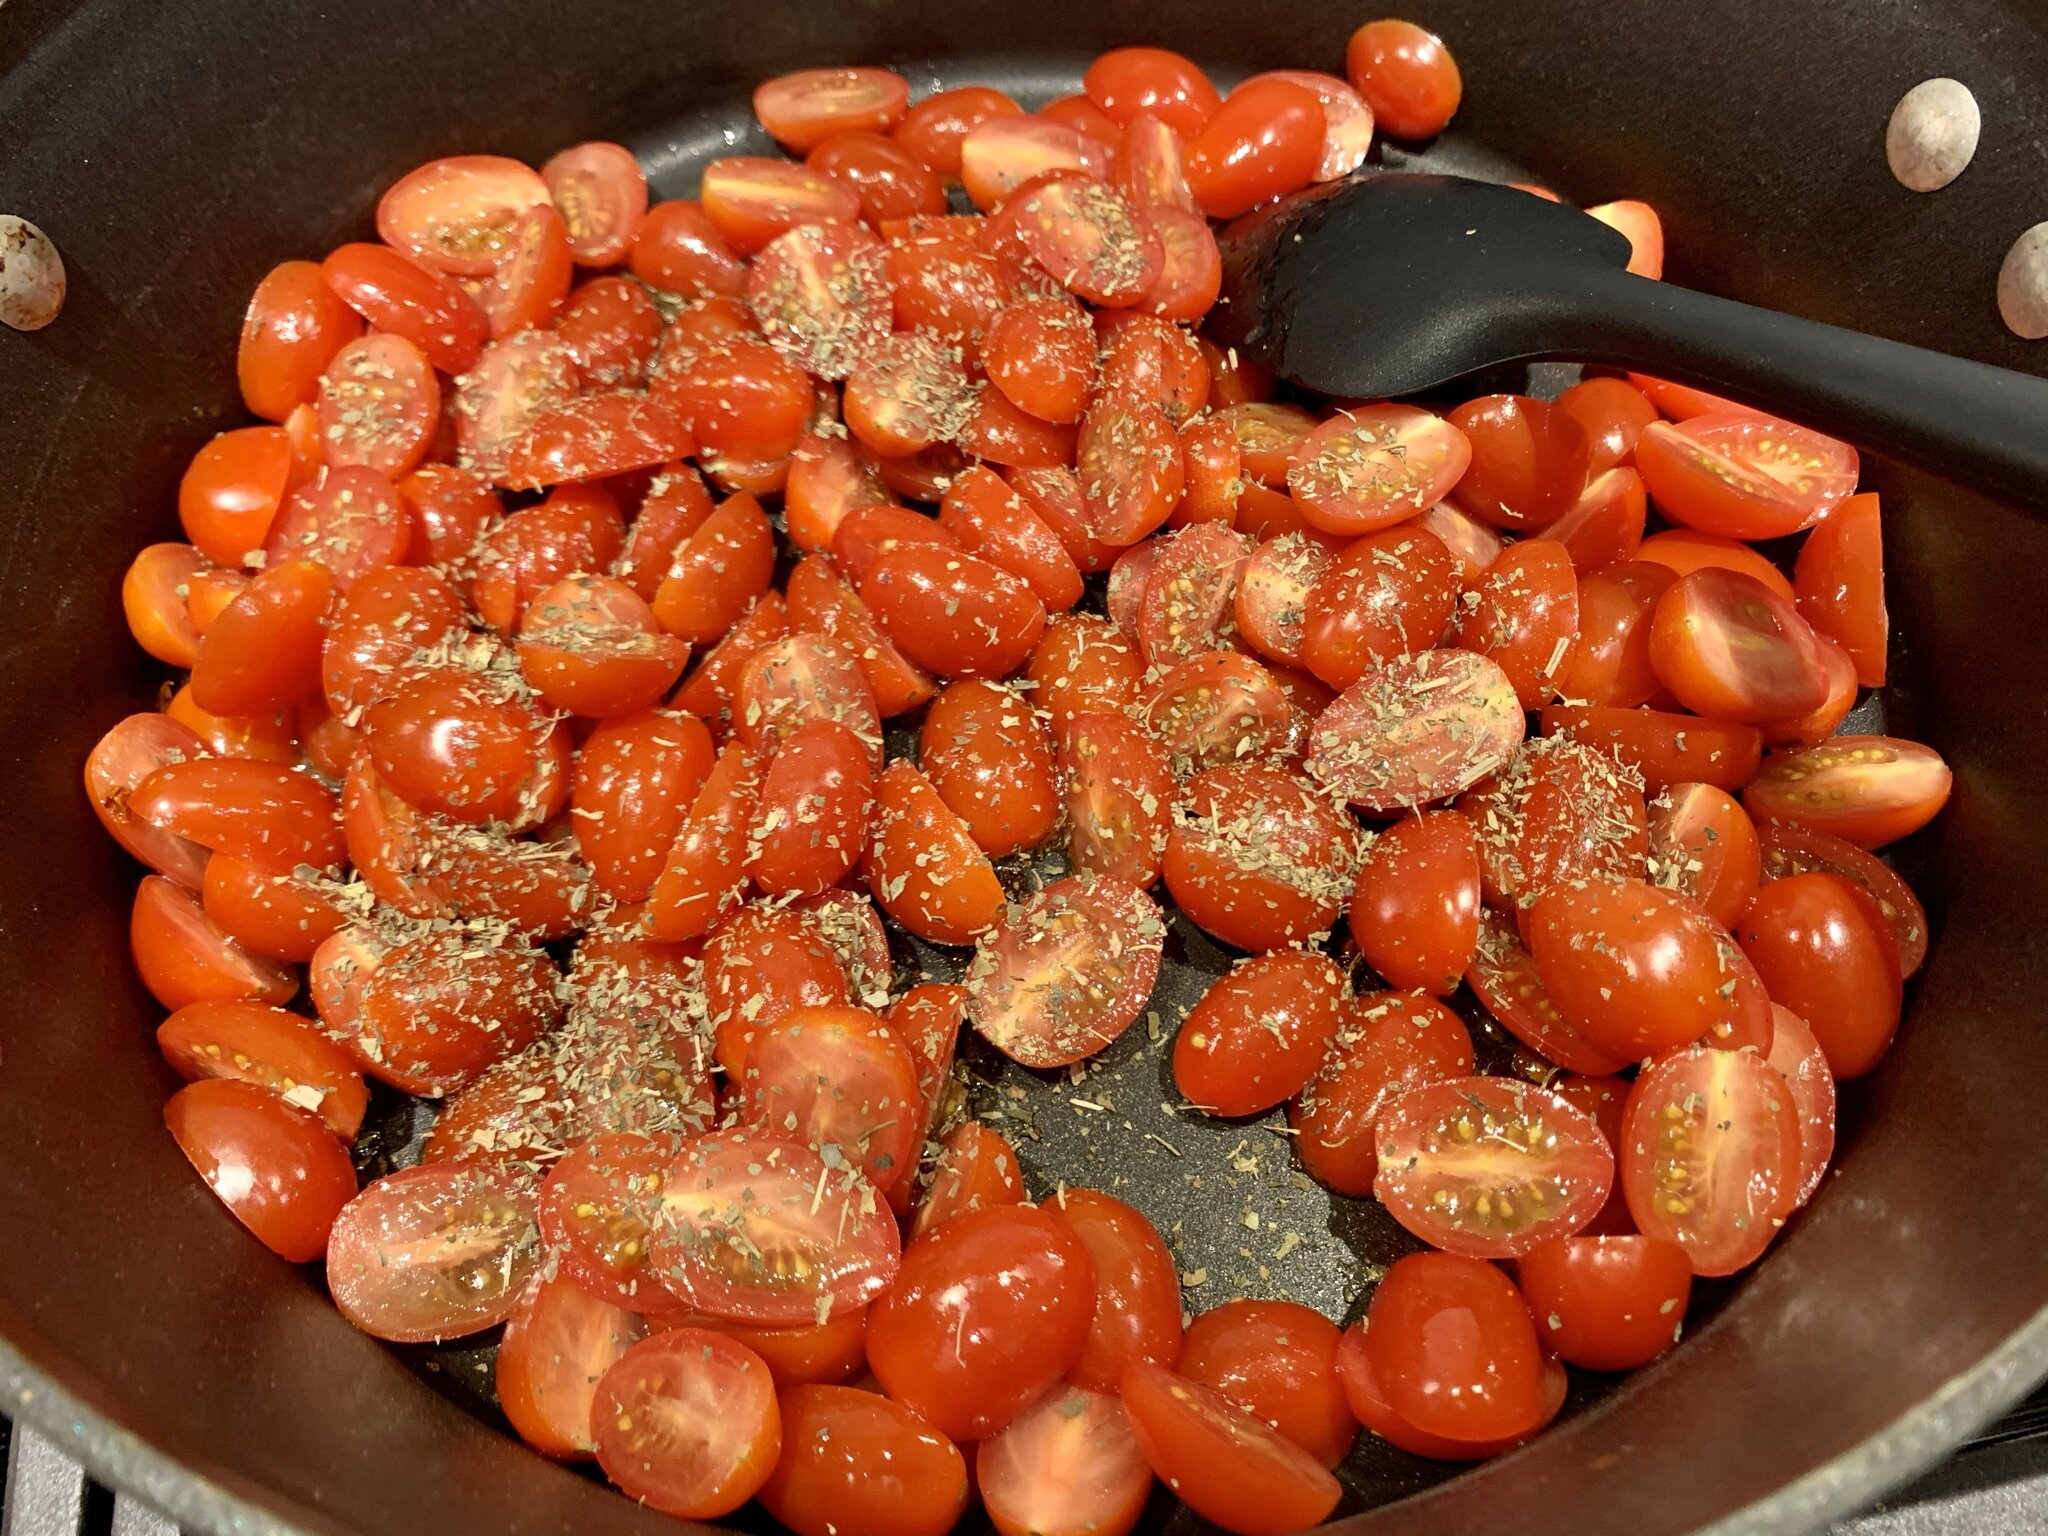 b) Tomatoes &amp; dried basil.